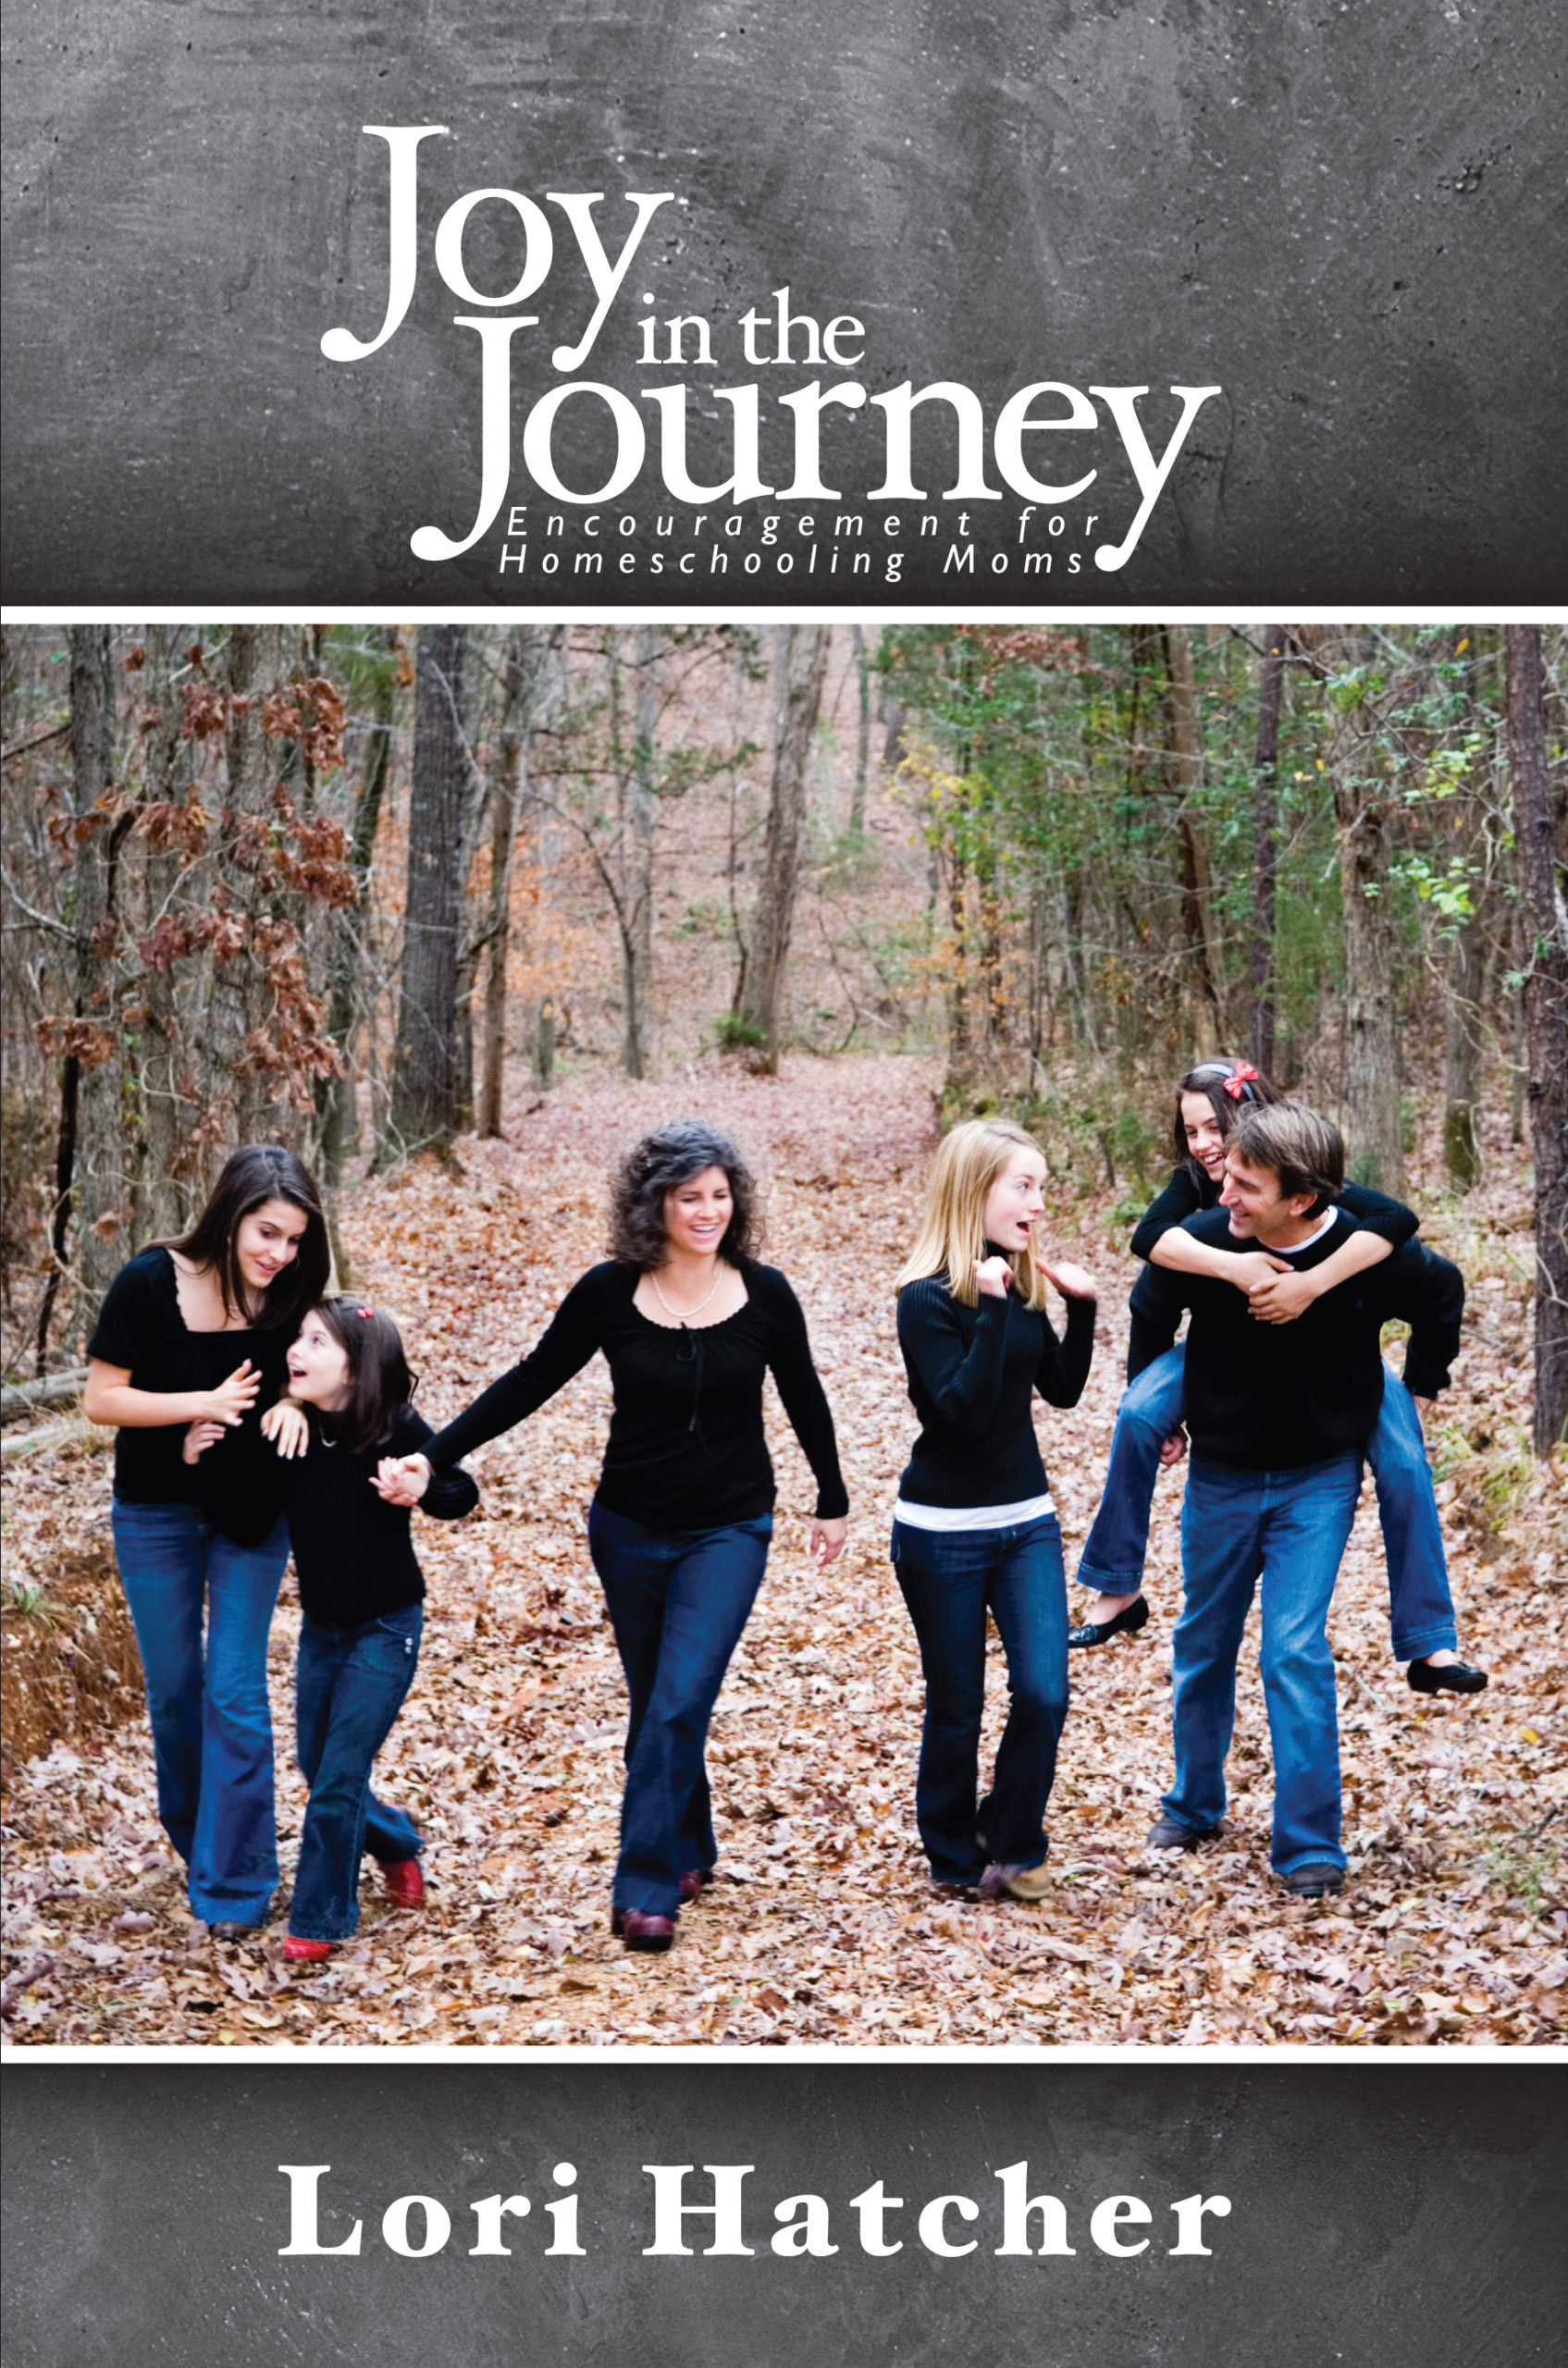 Joy in the Journey, Lori Hatcher, homeschooling encouragement